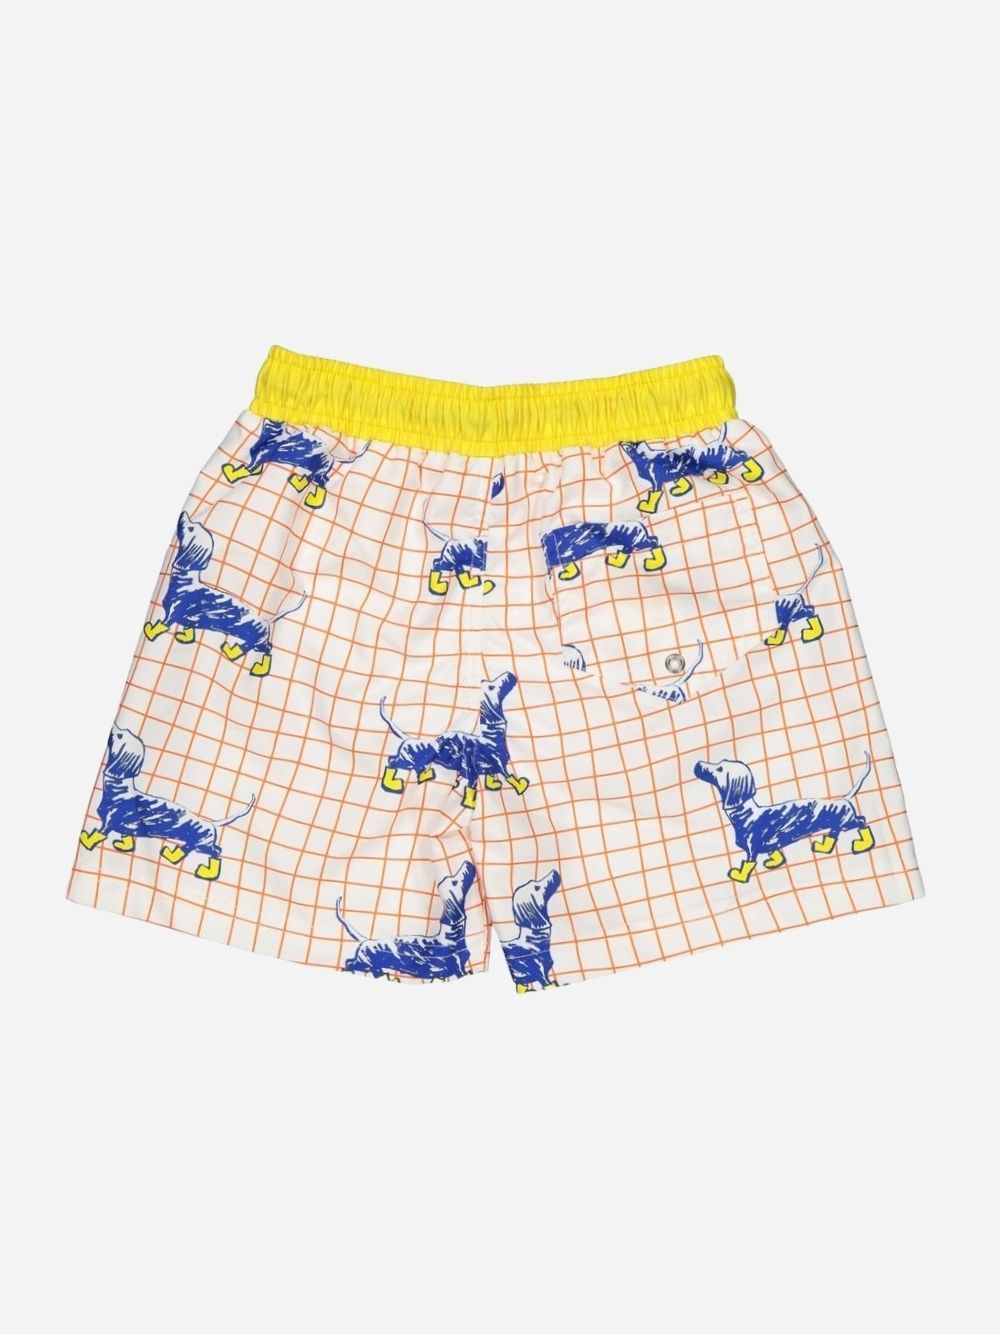 Puppies classic swim shorts